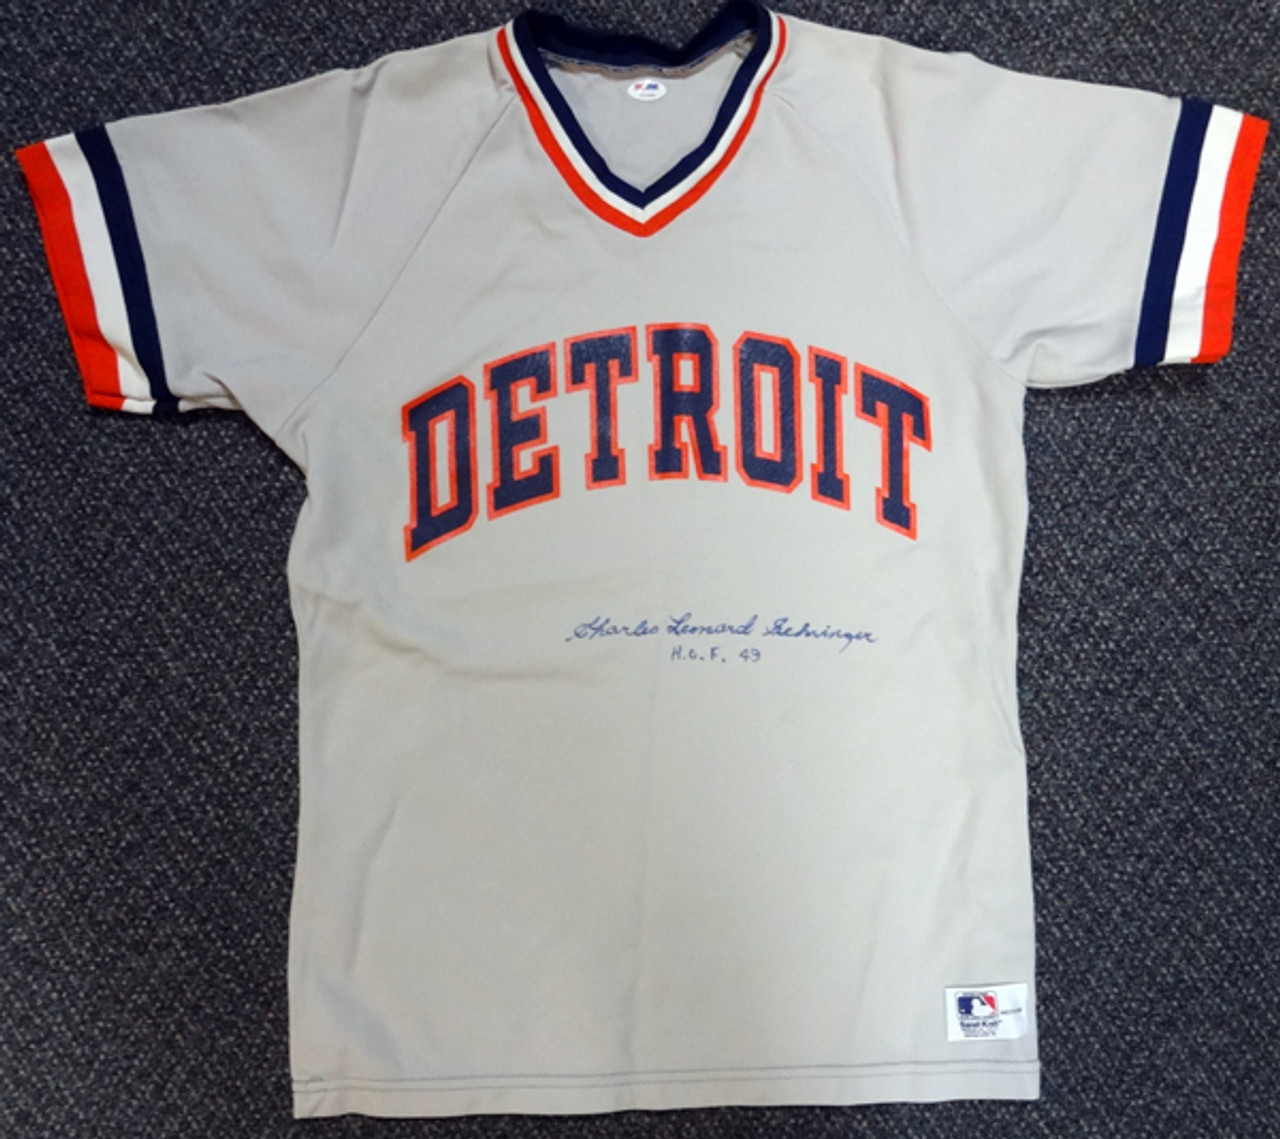 Detroit Tigers Charles Charlie Leonard Gehringer Autographed Gray Jersey  HOF 49 PSA/DNA #V11069 - Mill Creek Sports